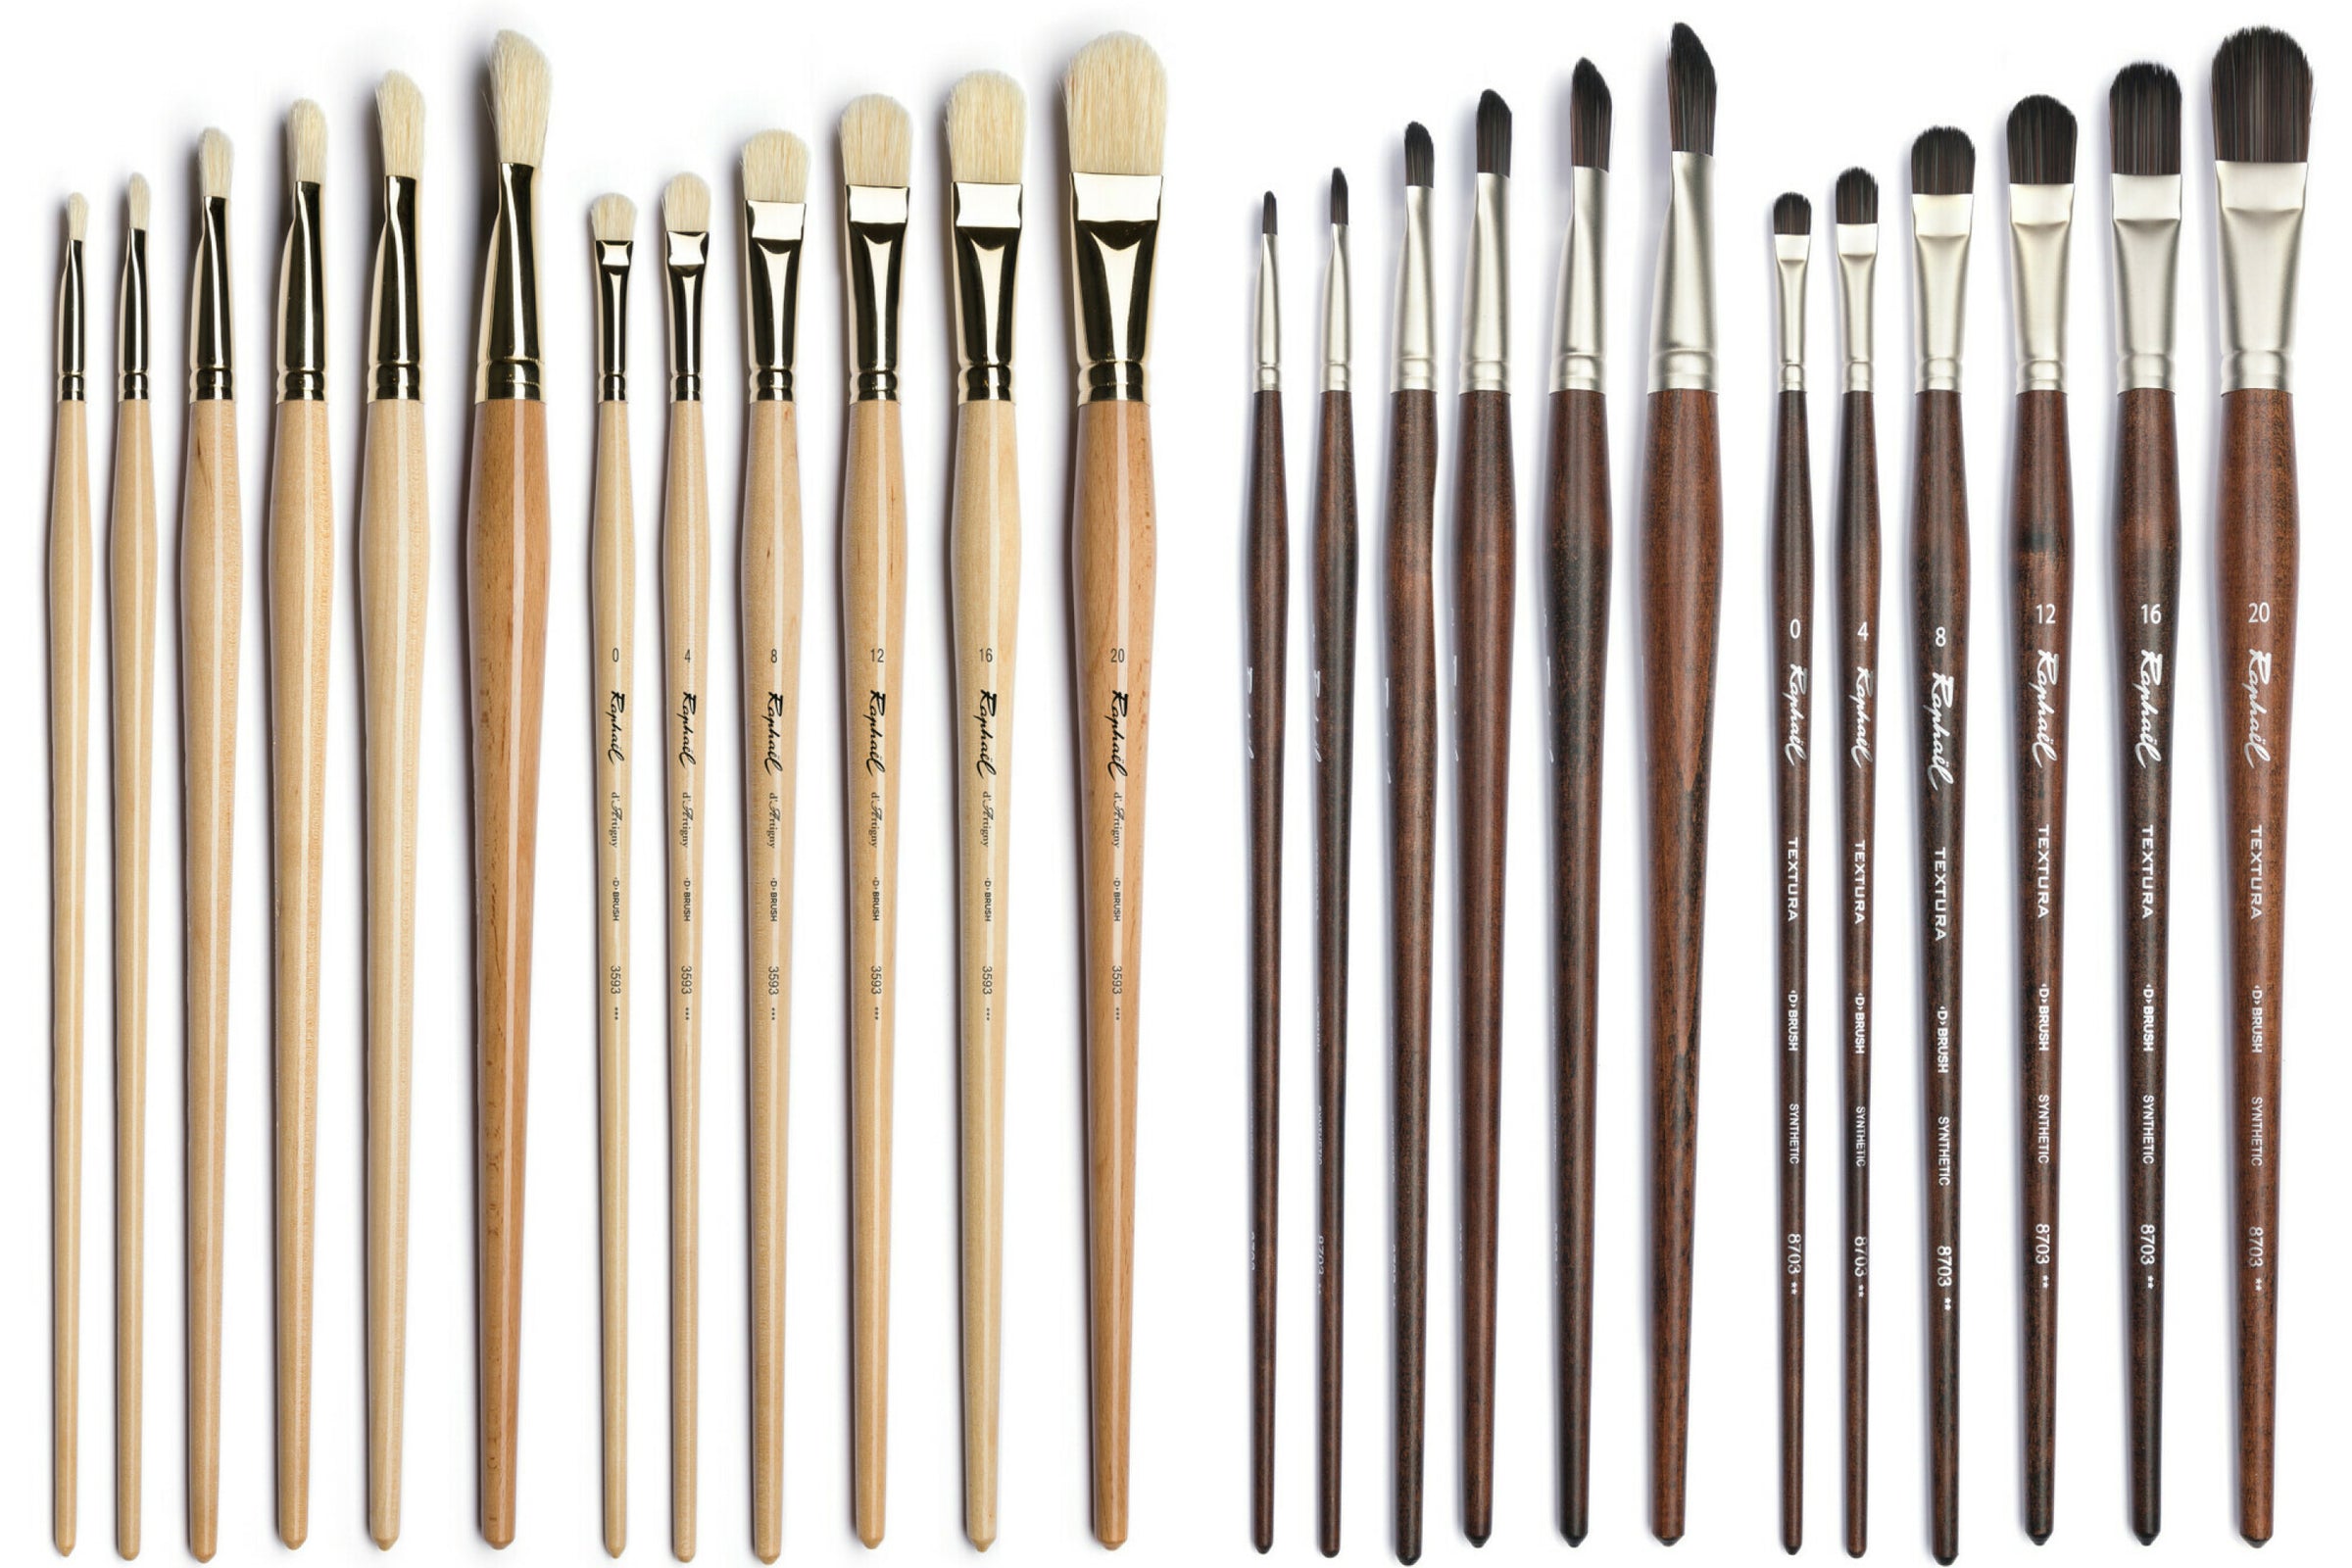 Trekell Oil Brush Set - Premium Artist Brushes for Oil Paint